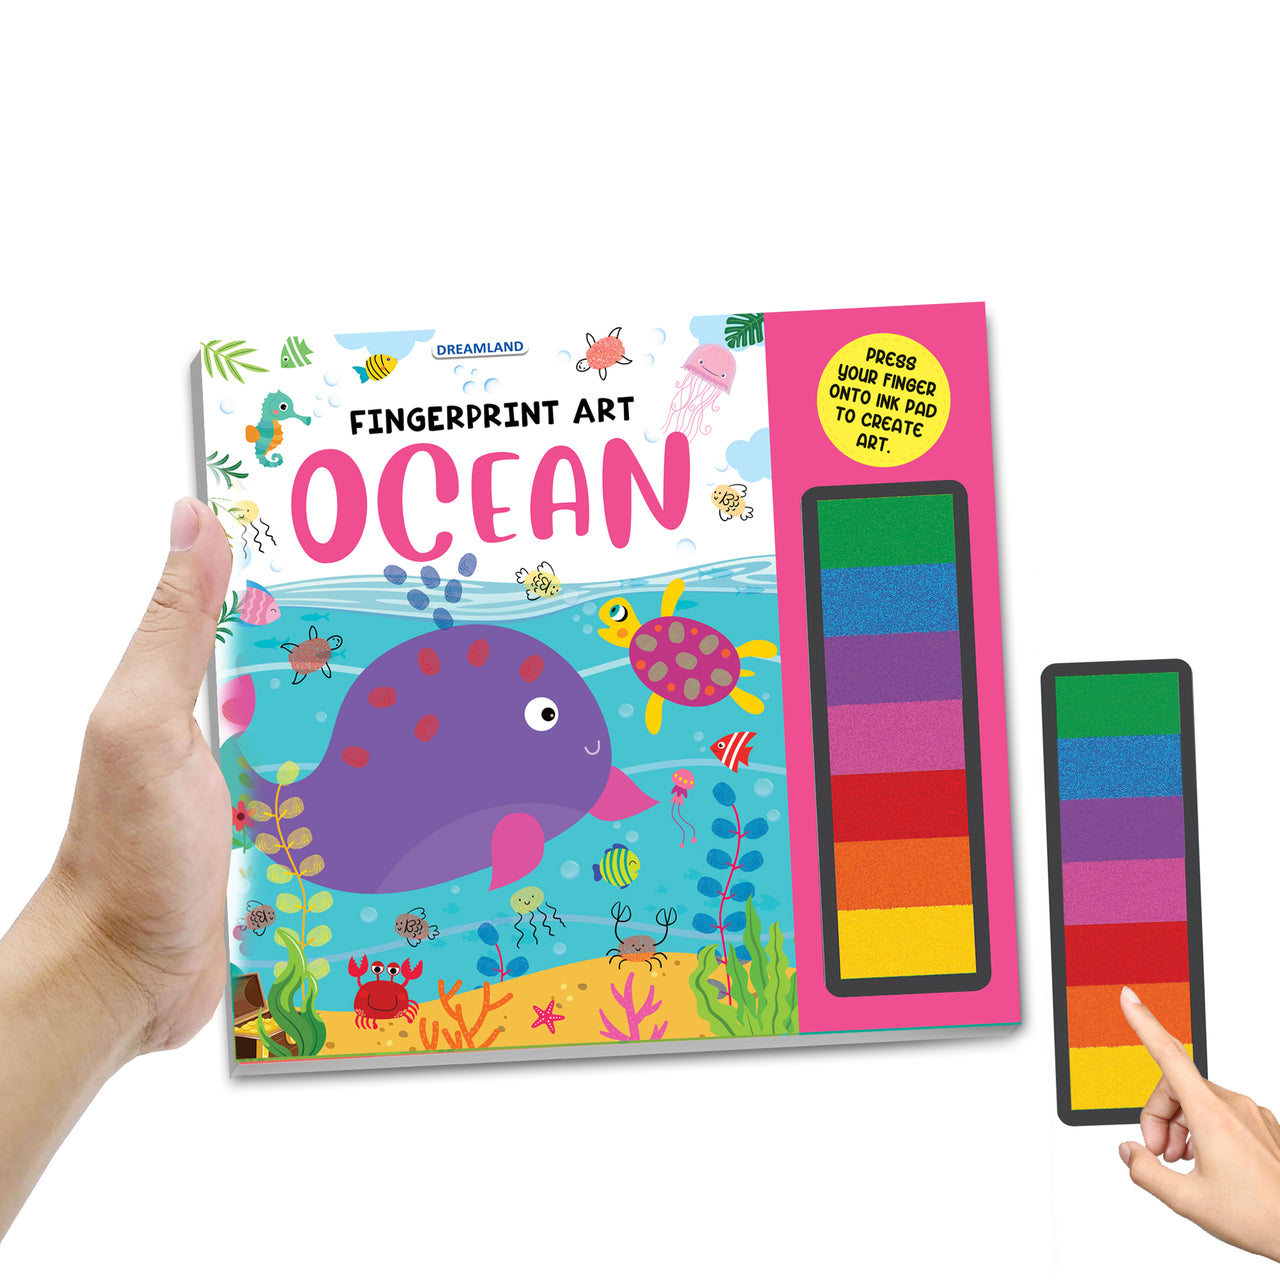 Dreamland Publications Fingerprint Art Activity Book for Children - Ocean with Thumbprint Gadget - Distacart